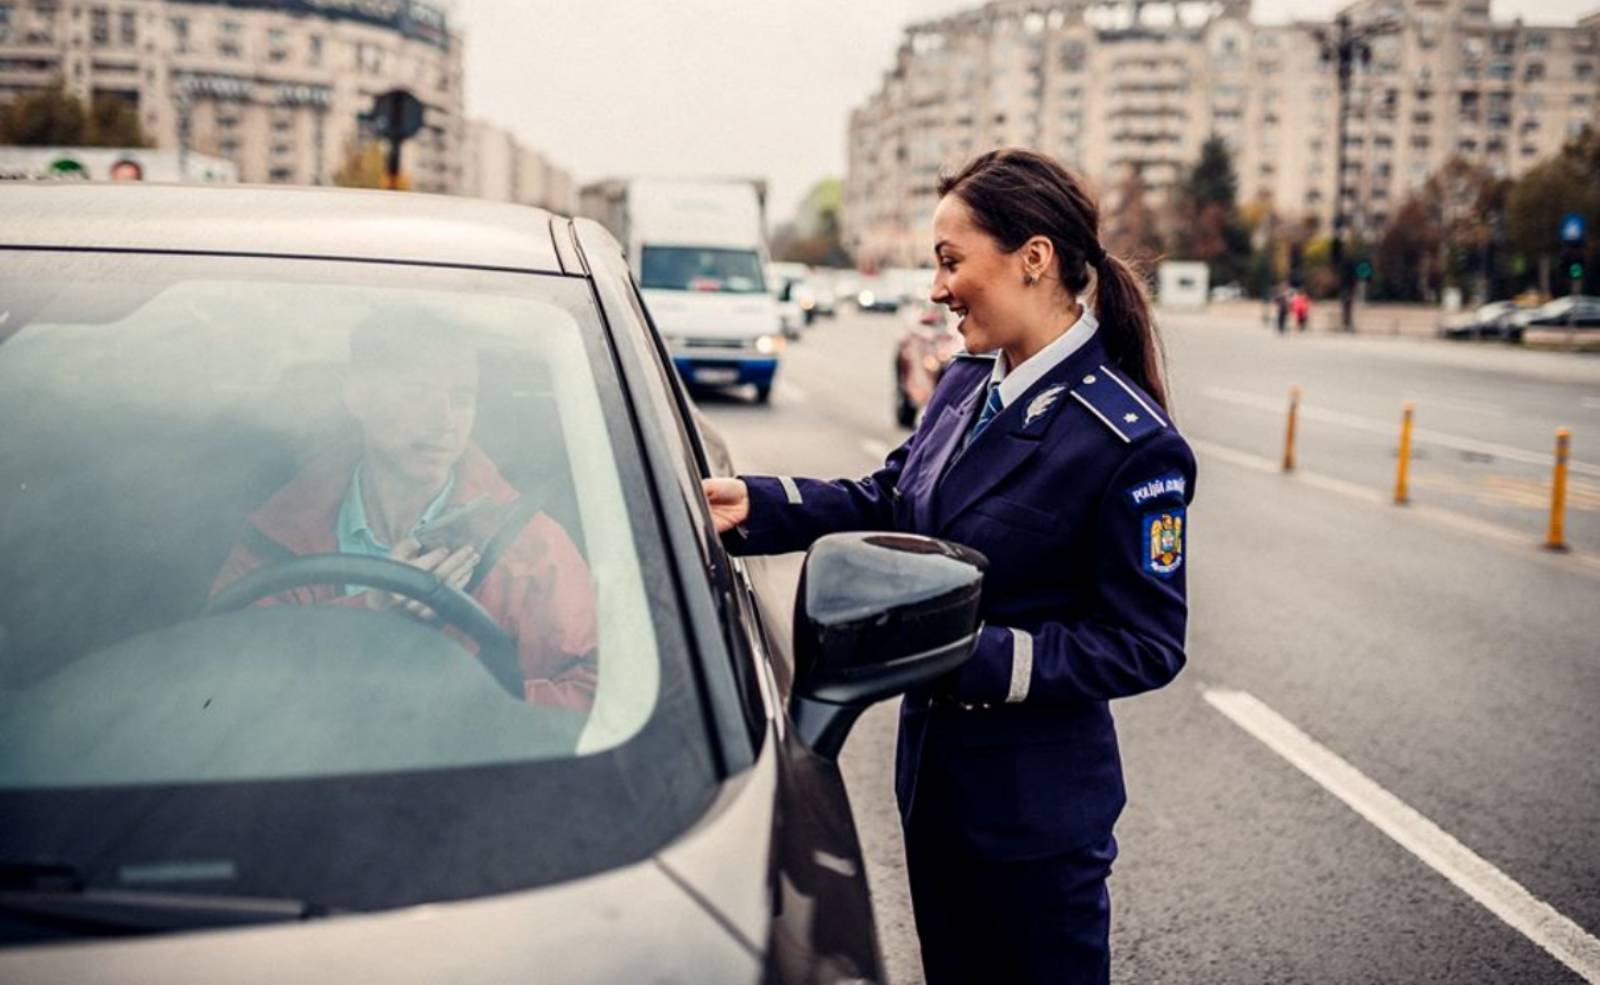 Rijden met de Roemeense politie